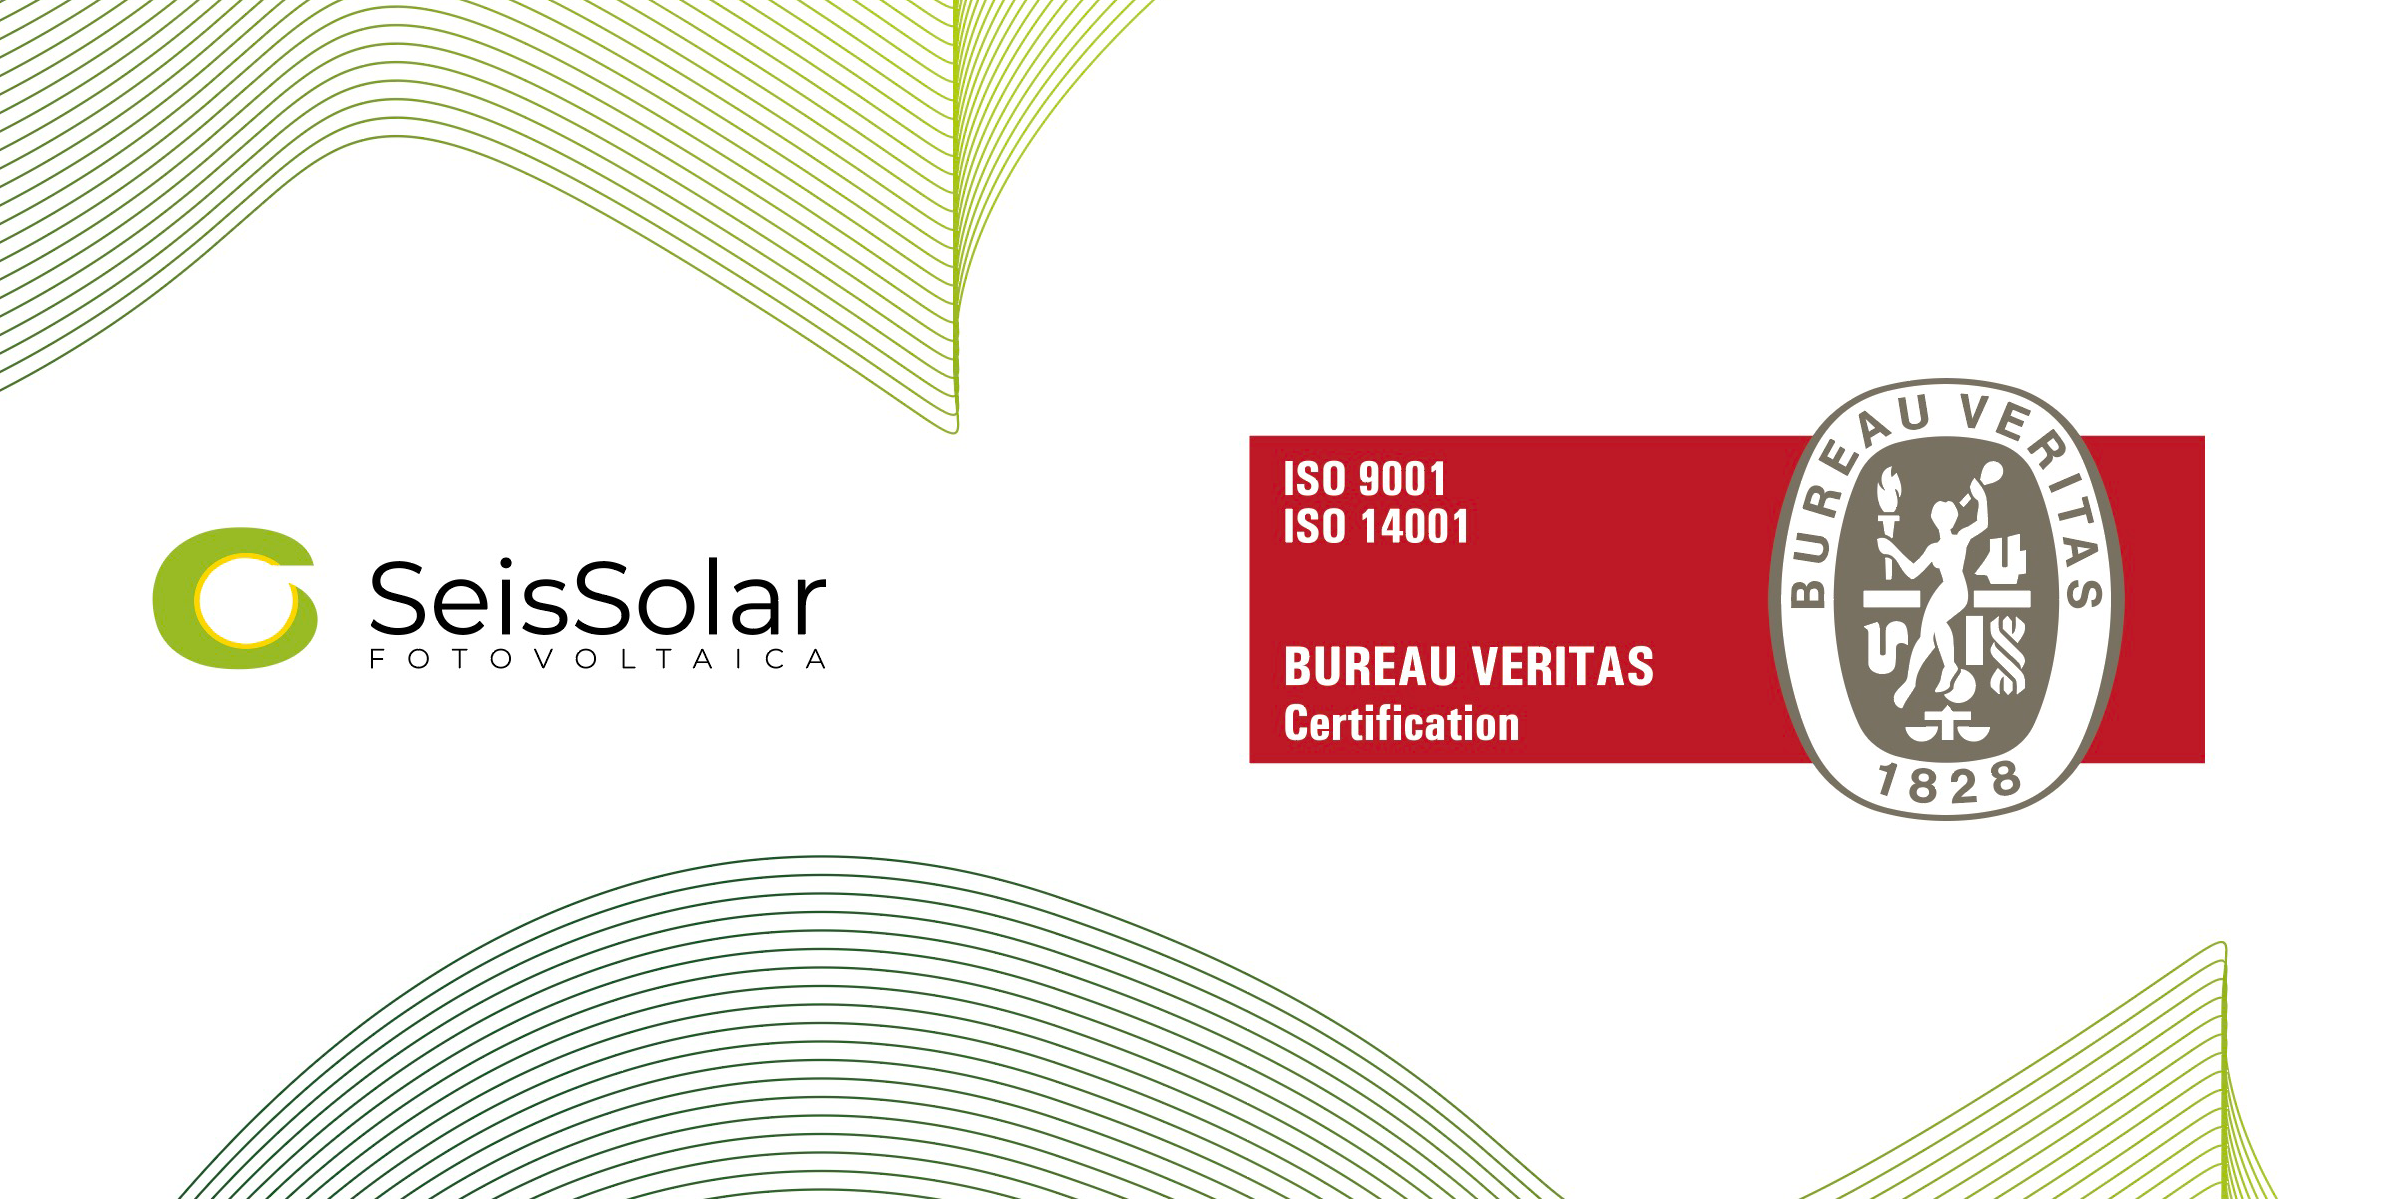 ¡SEIS SOLAR obtiene las Certificaciones ISO 9001 e ISO 14001!